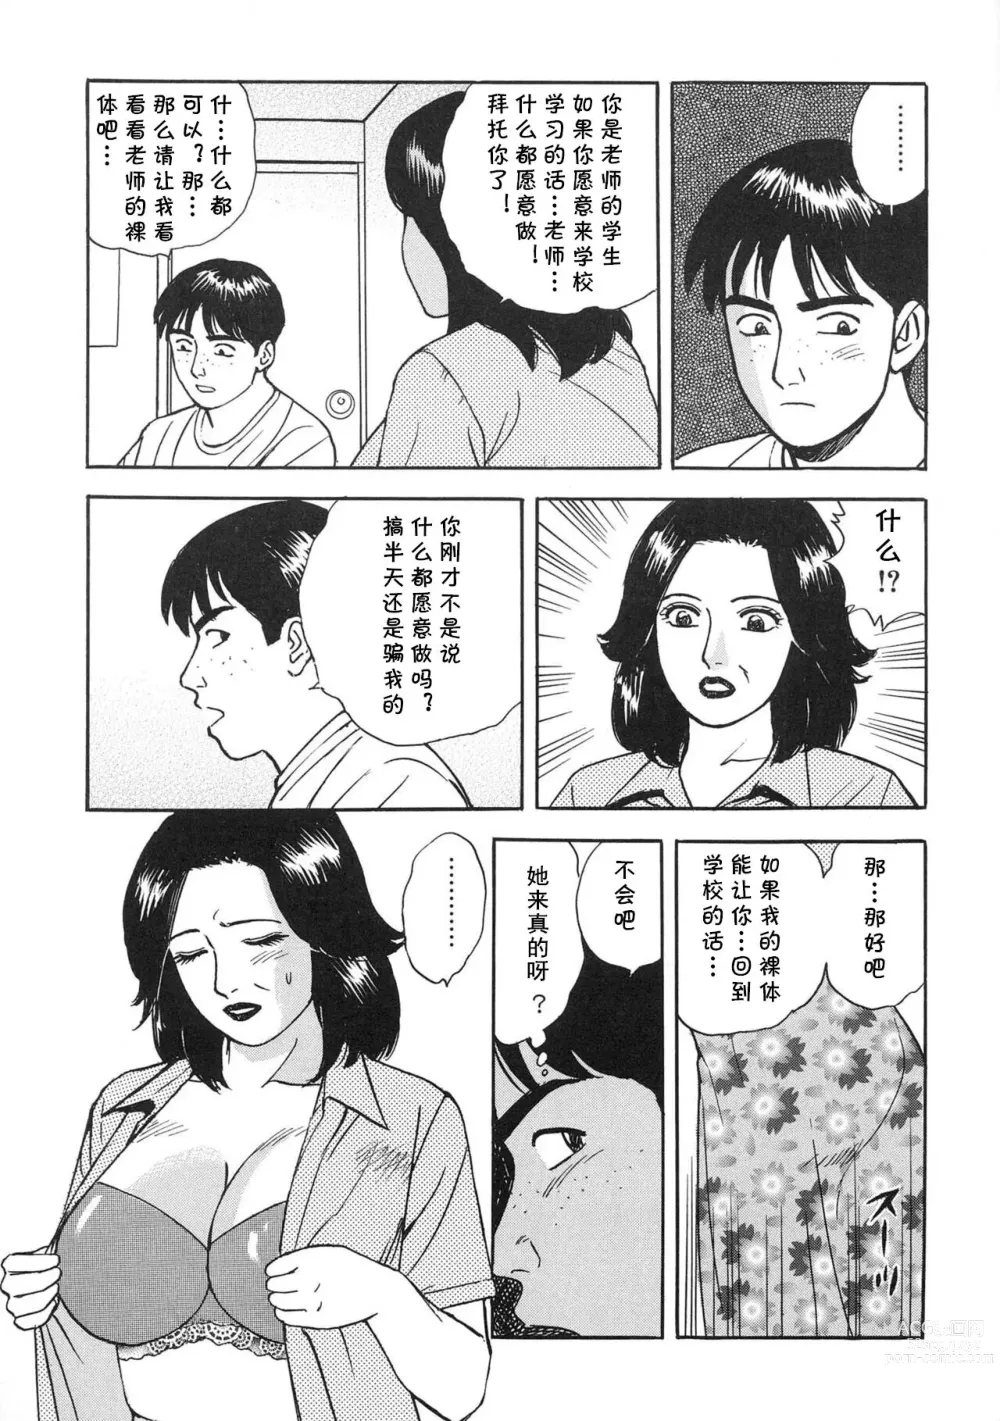 Page 5 of manga Gokuin Onna Kyoushi no Seikatsu Shidou